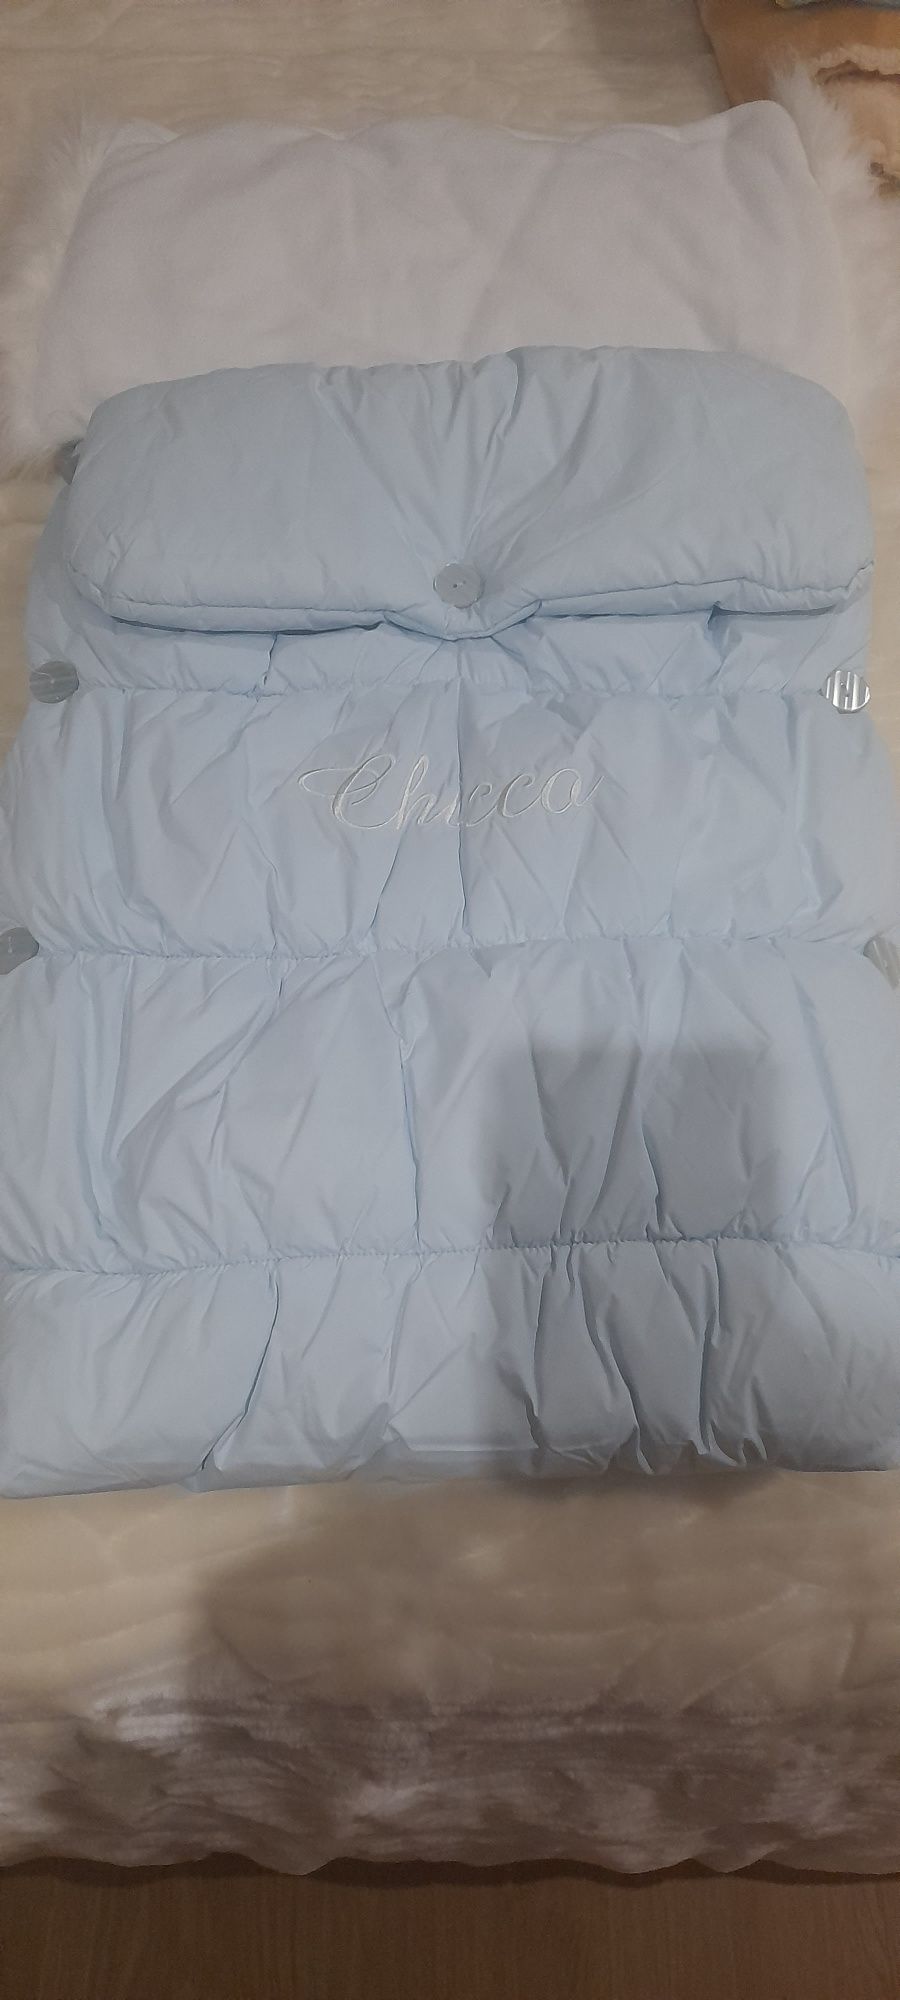 Saco cama Chicco, cobertor + colcha e e resguardo de berço